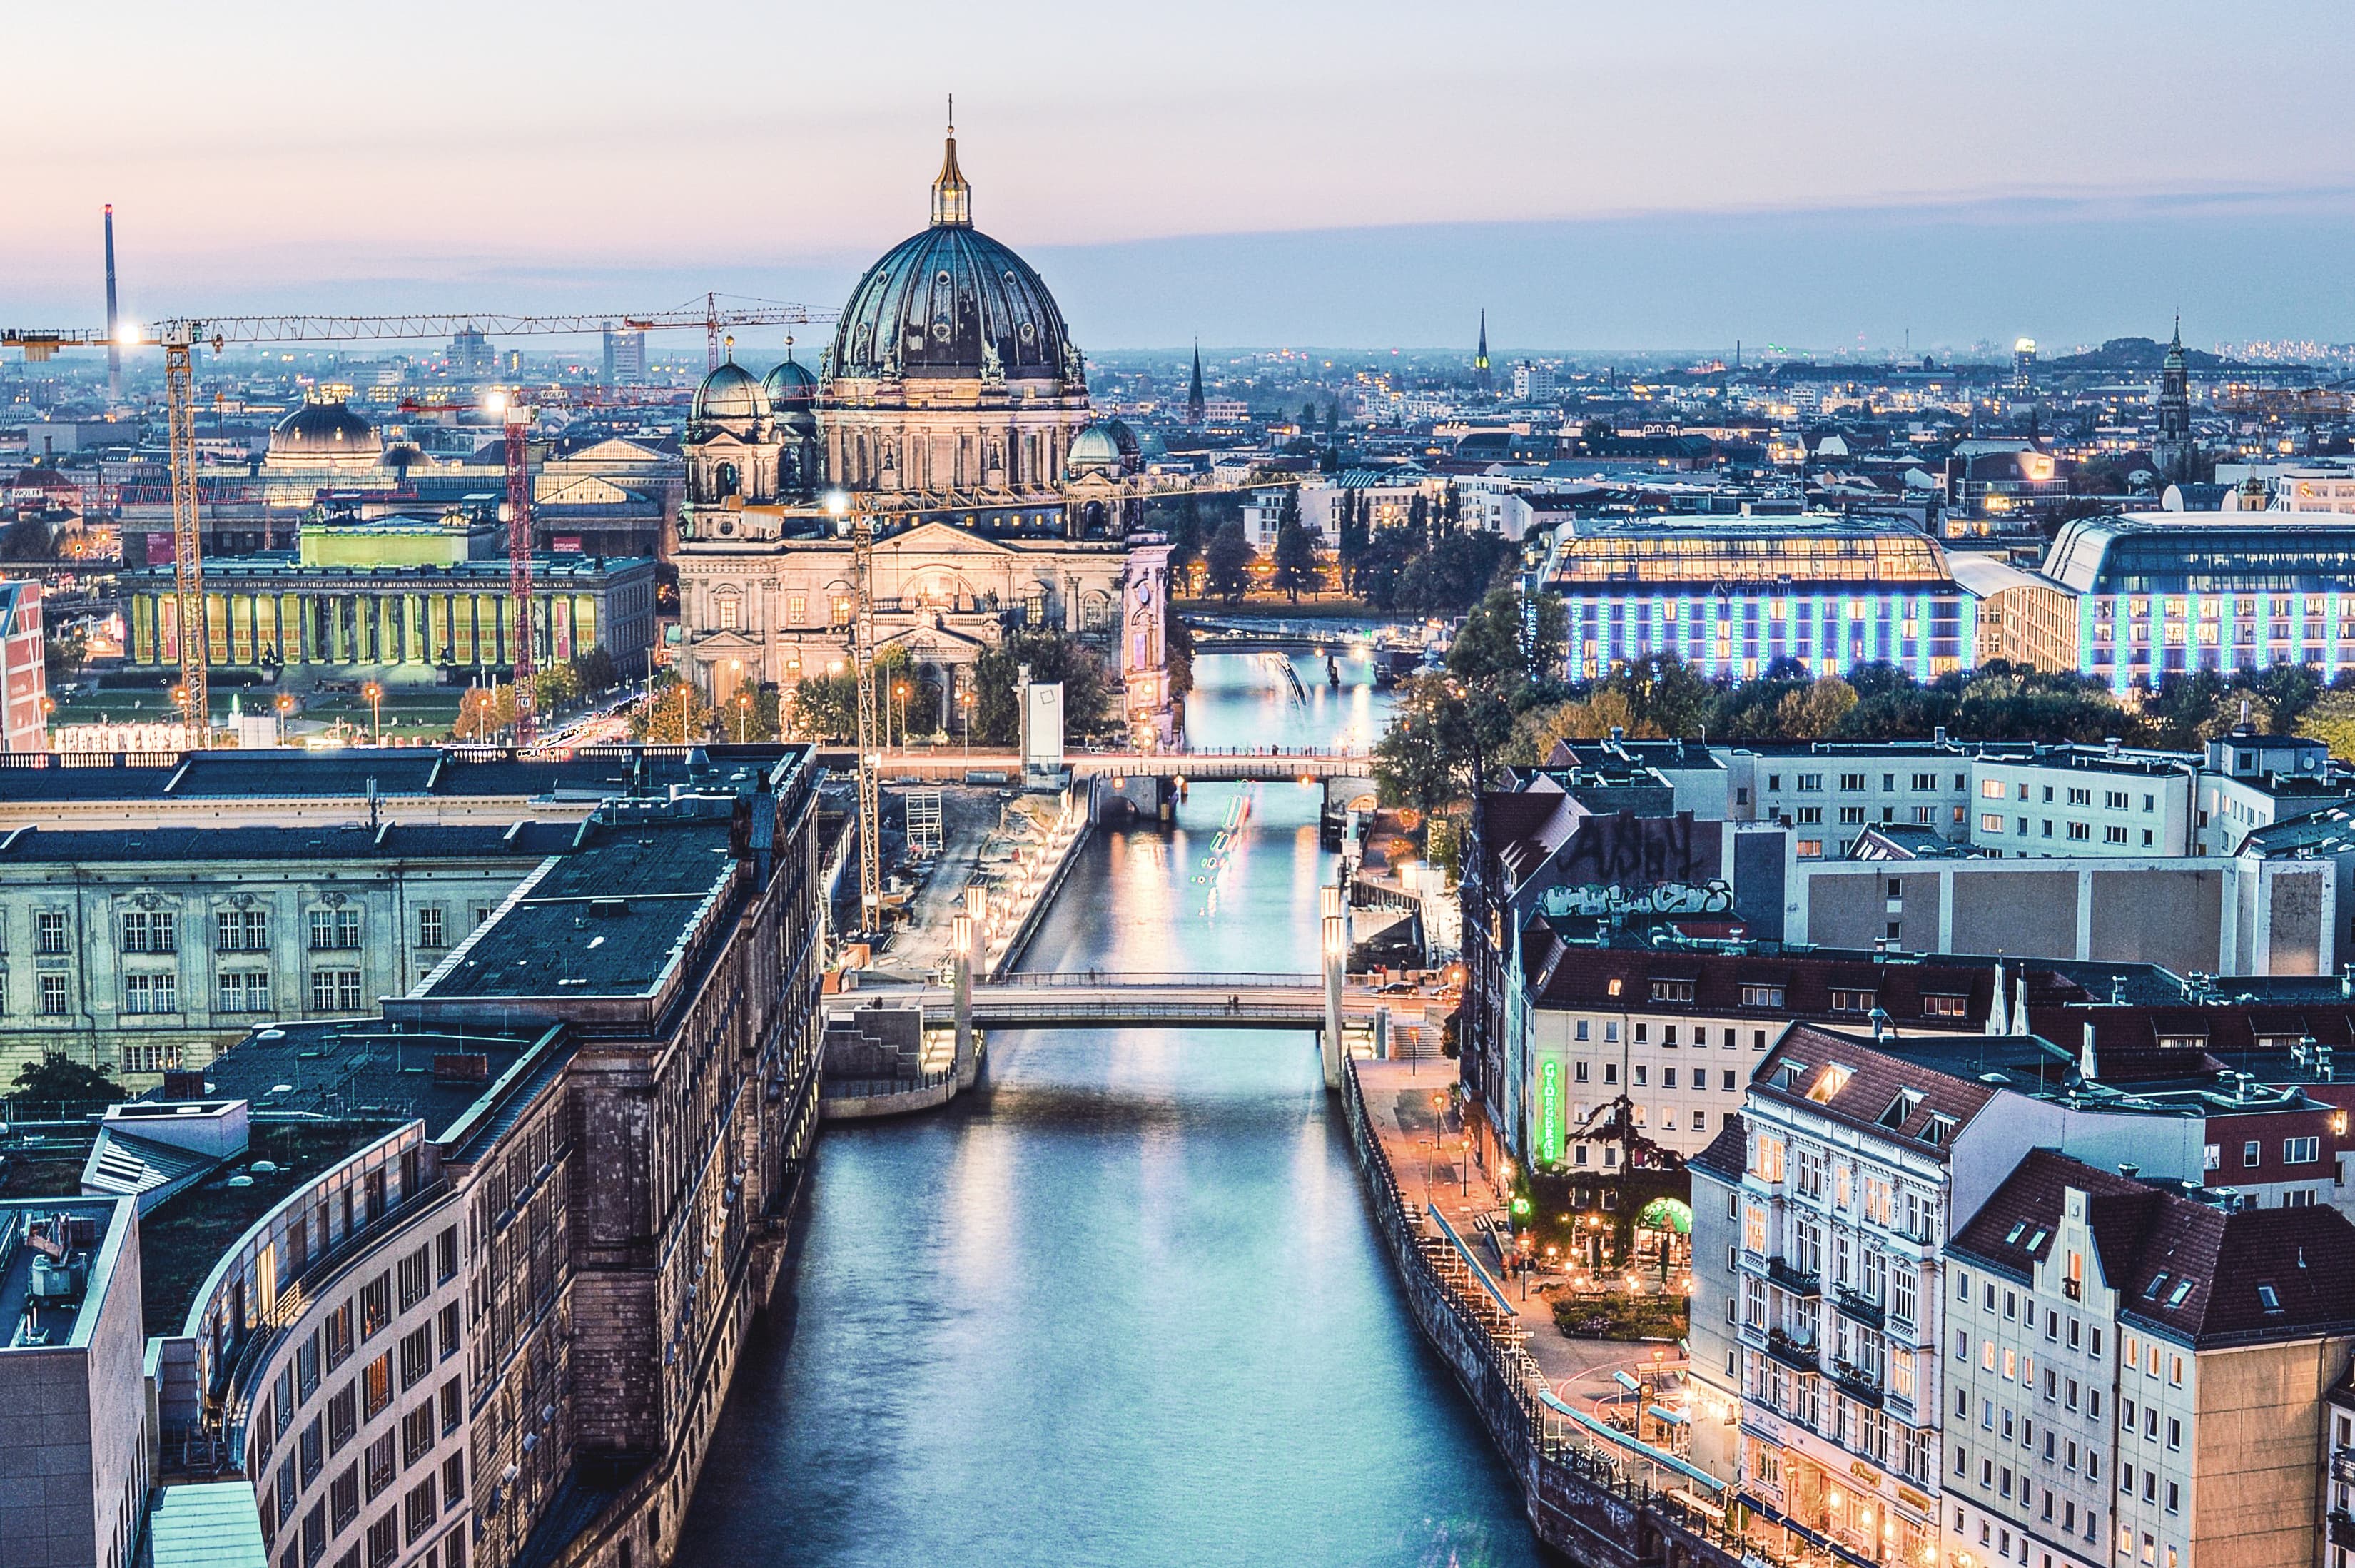 Titelbild für Infoseite "duales Studium Marketing Berlin": Blick auf Fluss und Stadt